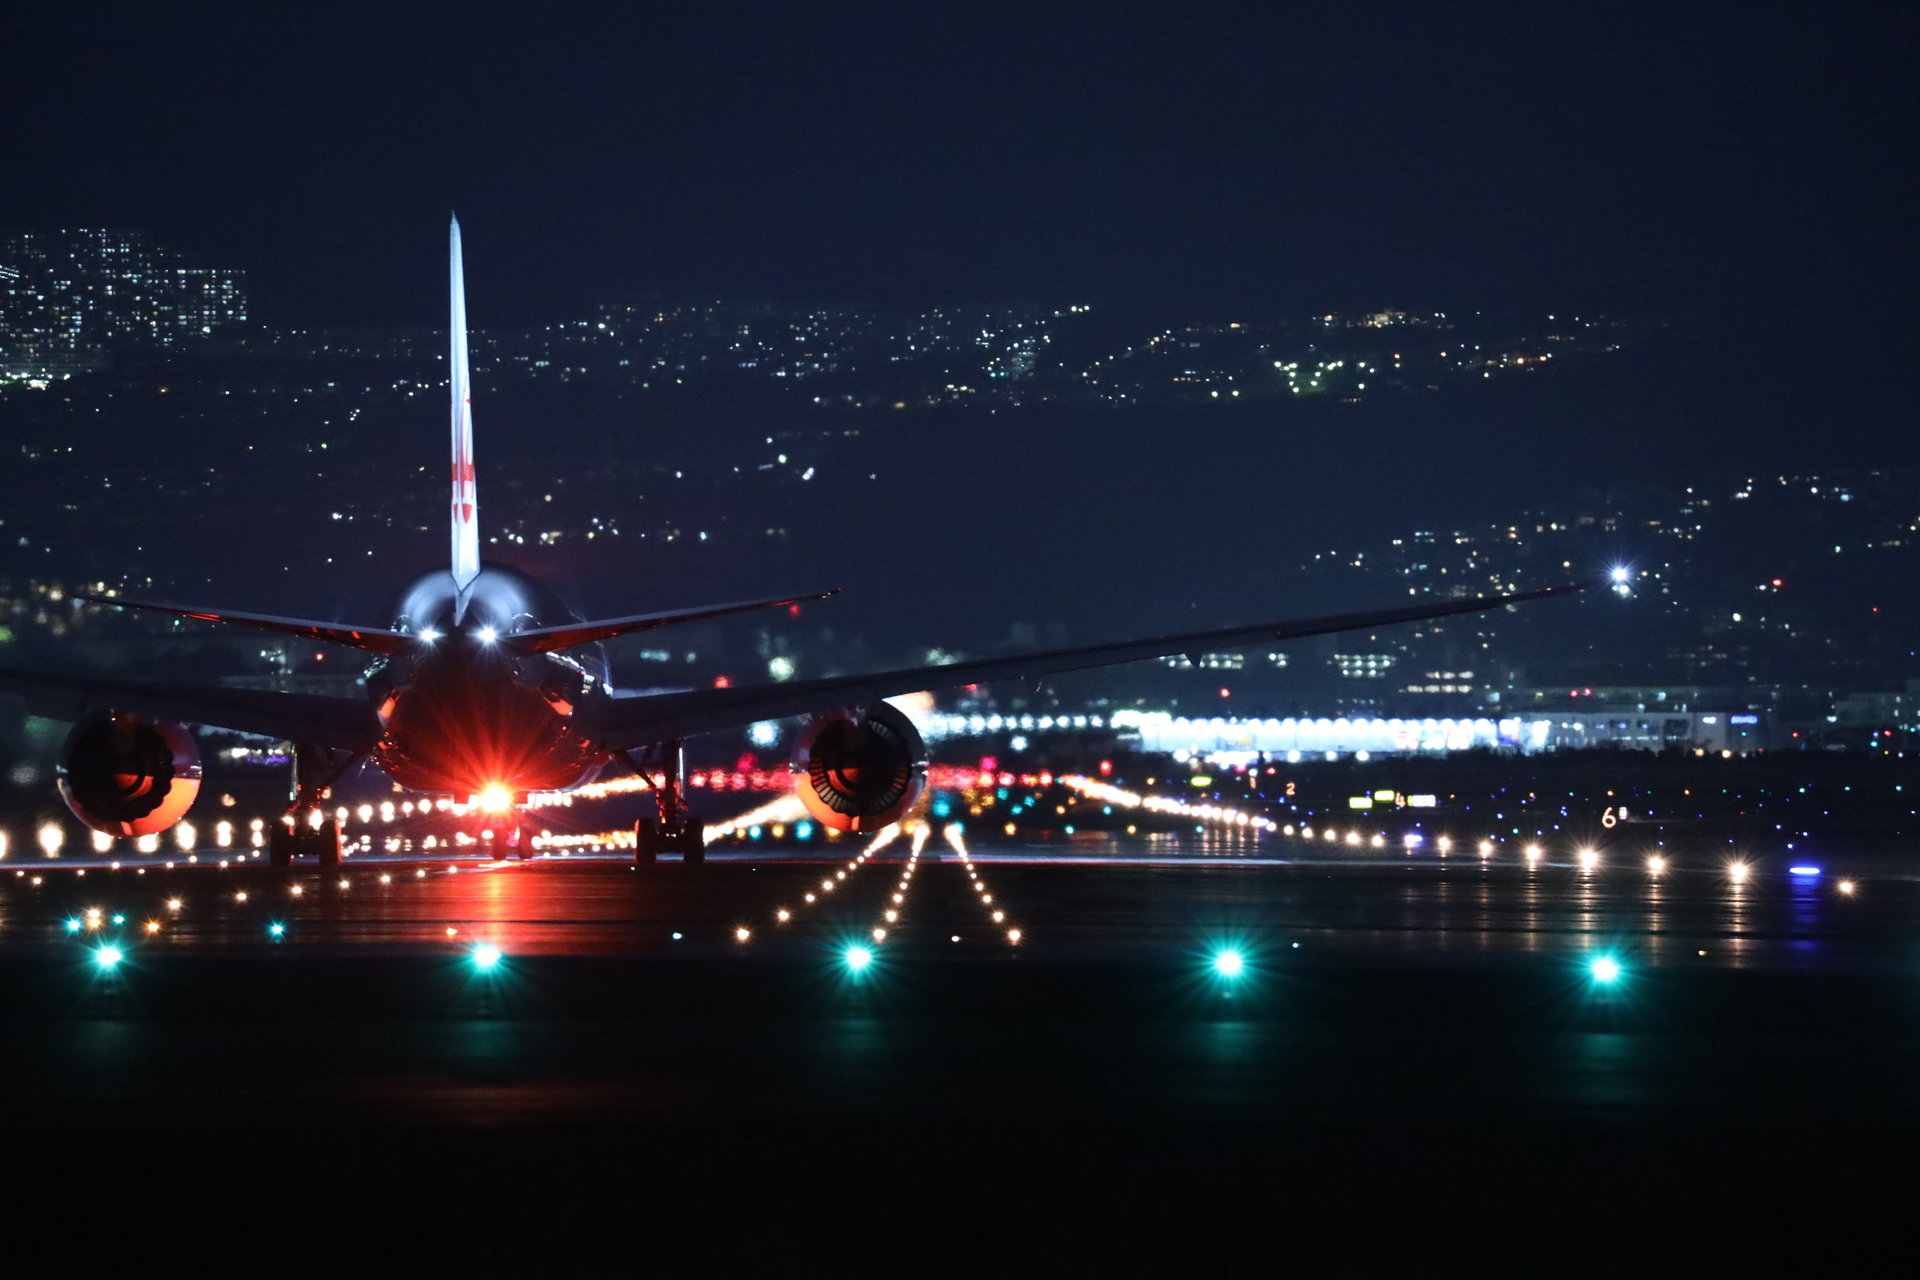 伊丹空港の夜景撮影を実施しました 飛行機で国内旅行に行こう